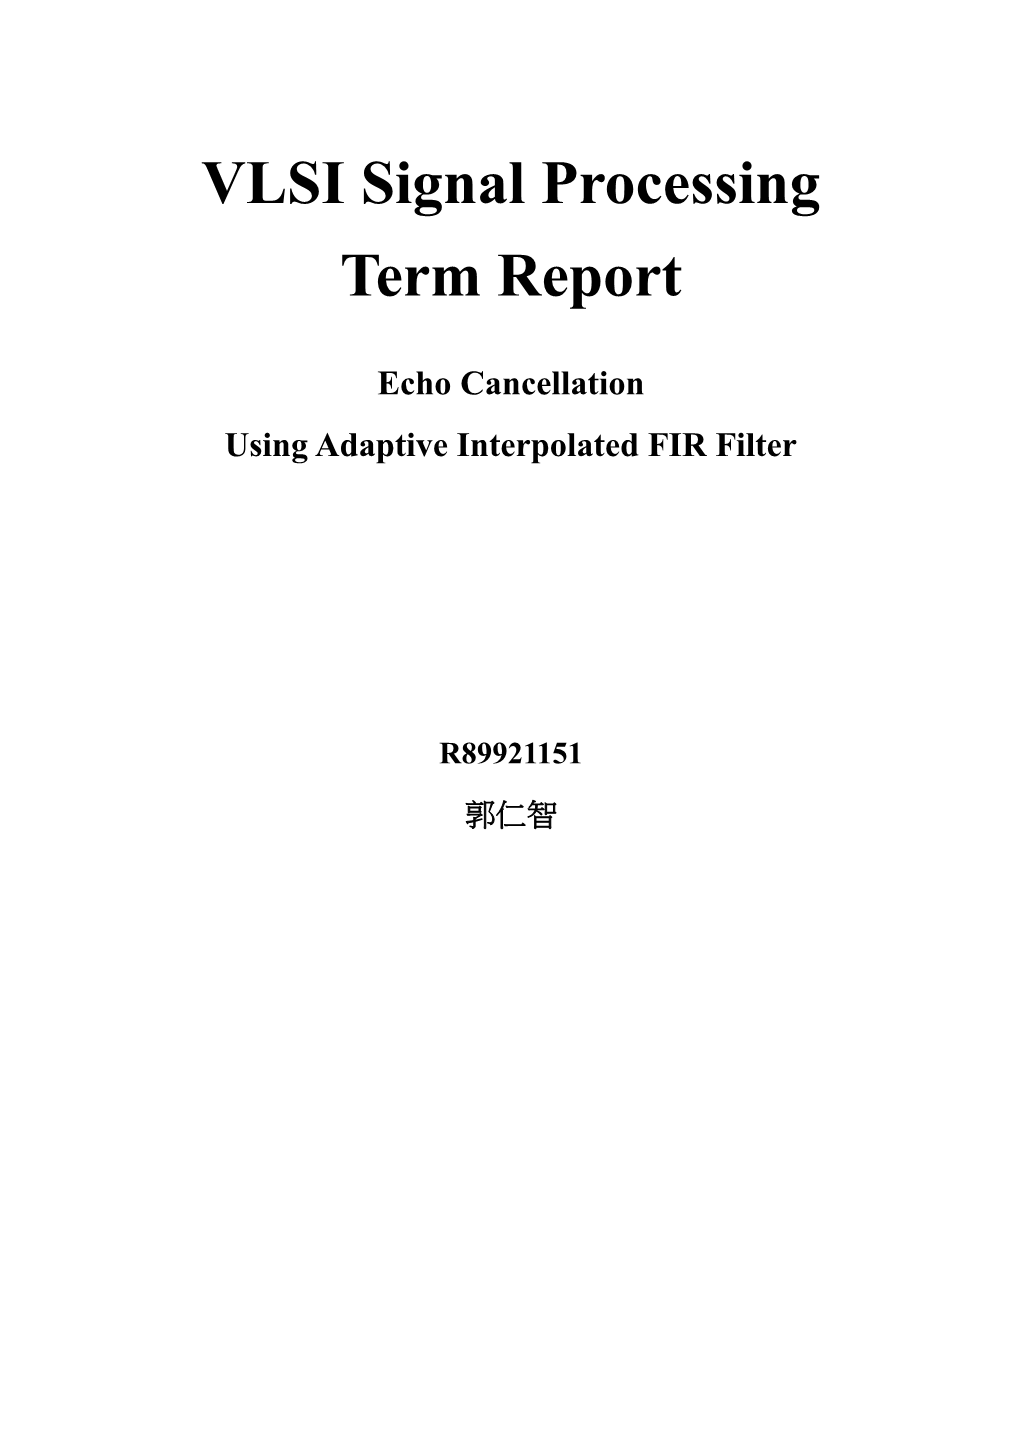 VLSI Signal Processing Term Report